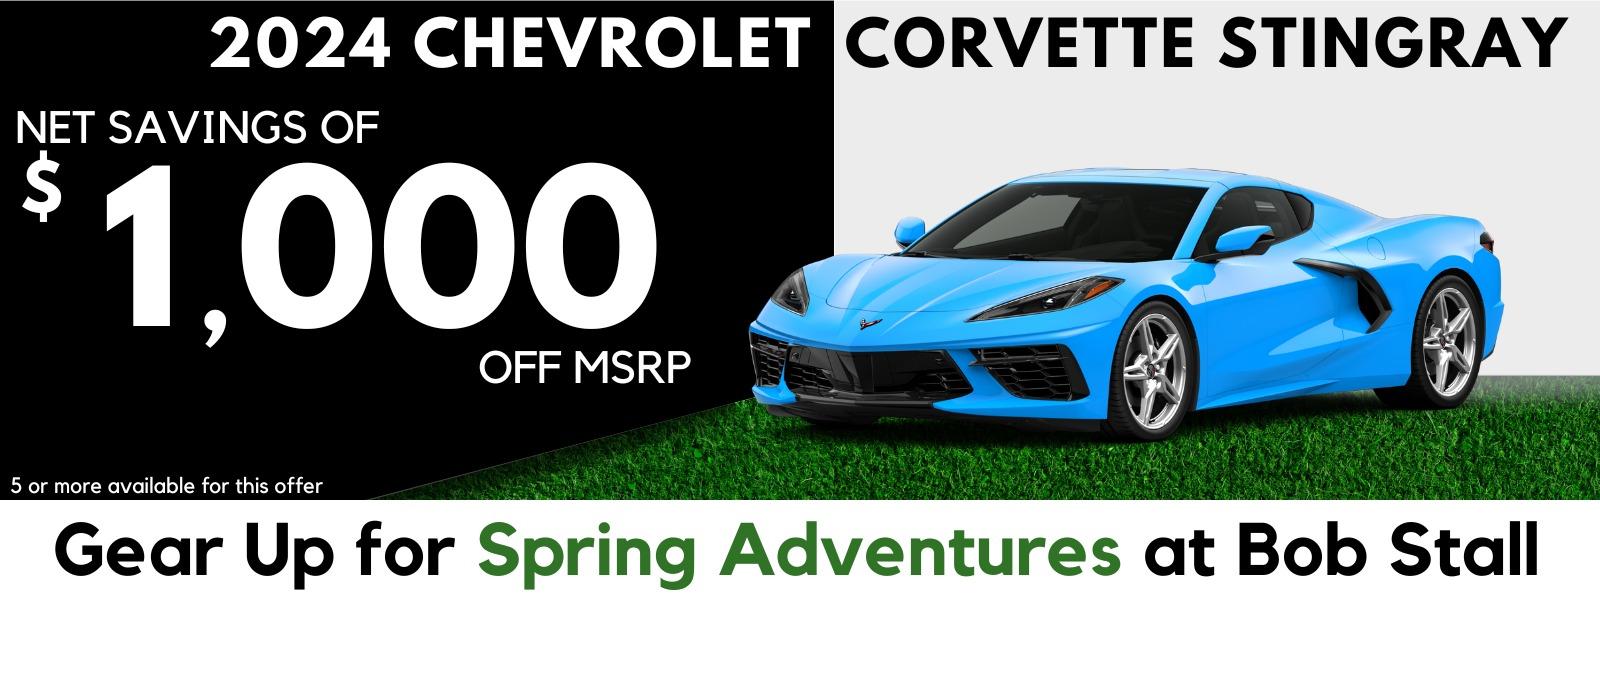 2024 Corvette Savings - Net Savings of $1,000 off MSRP